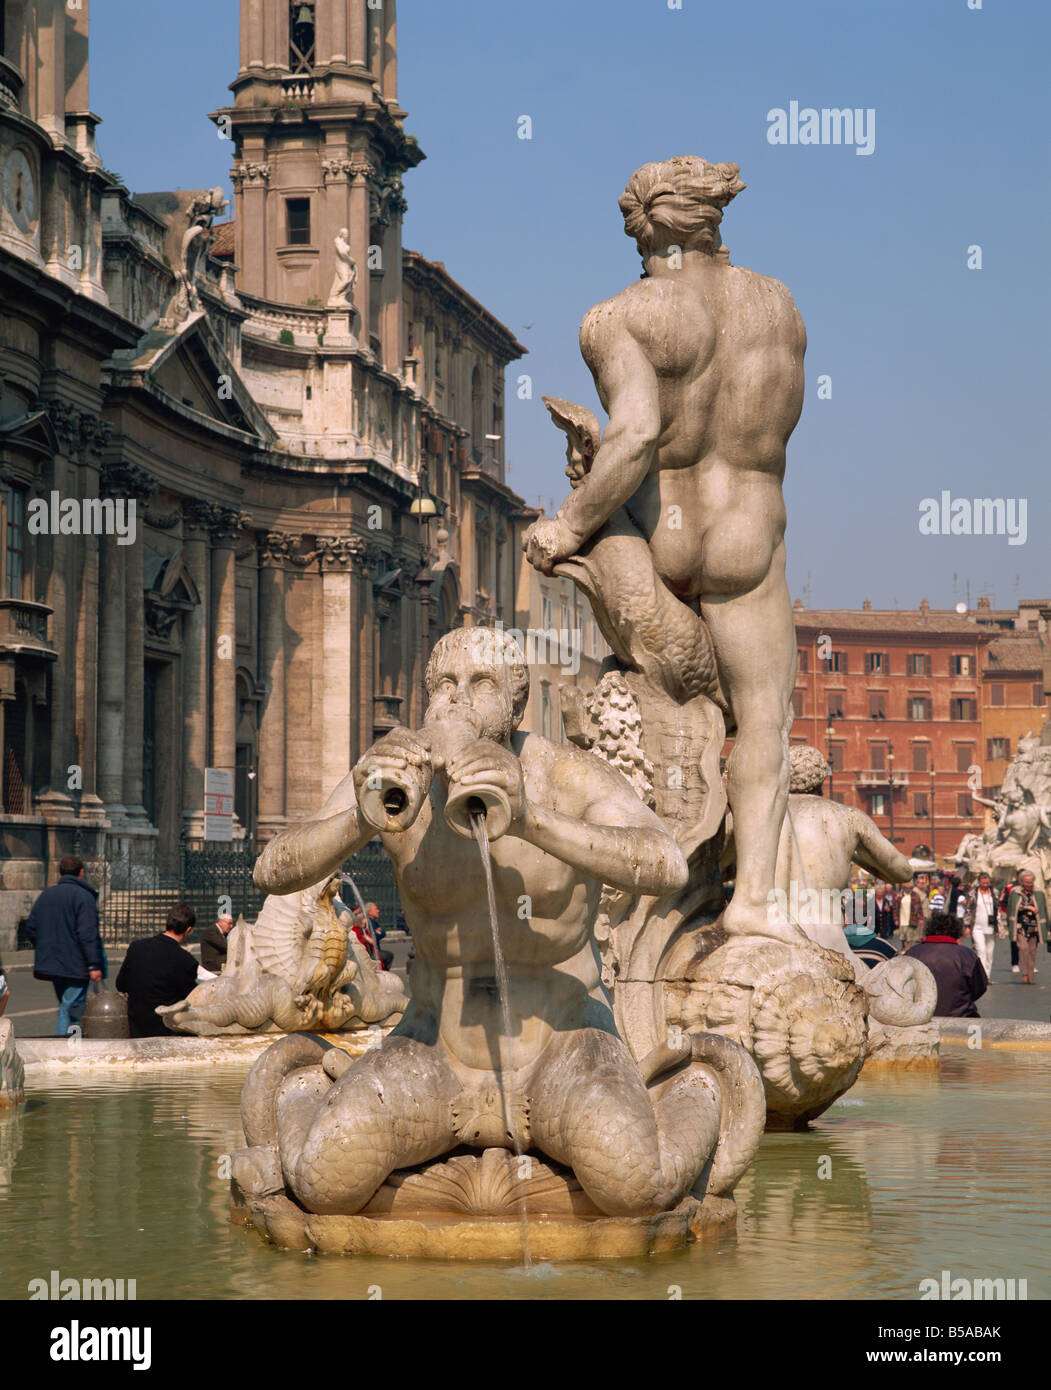 The fountain in the Piazza Navona in Rome Lazio Italy R Rainford Stock Photo